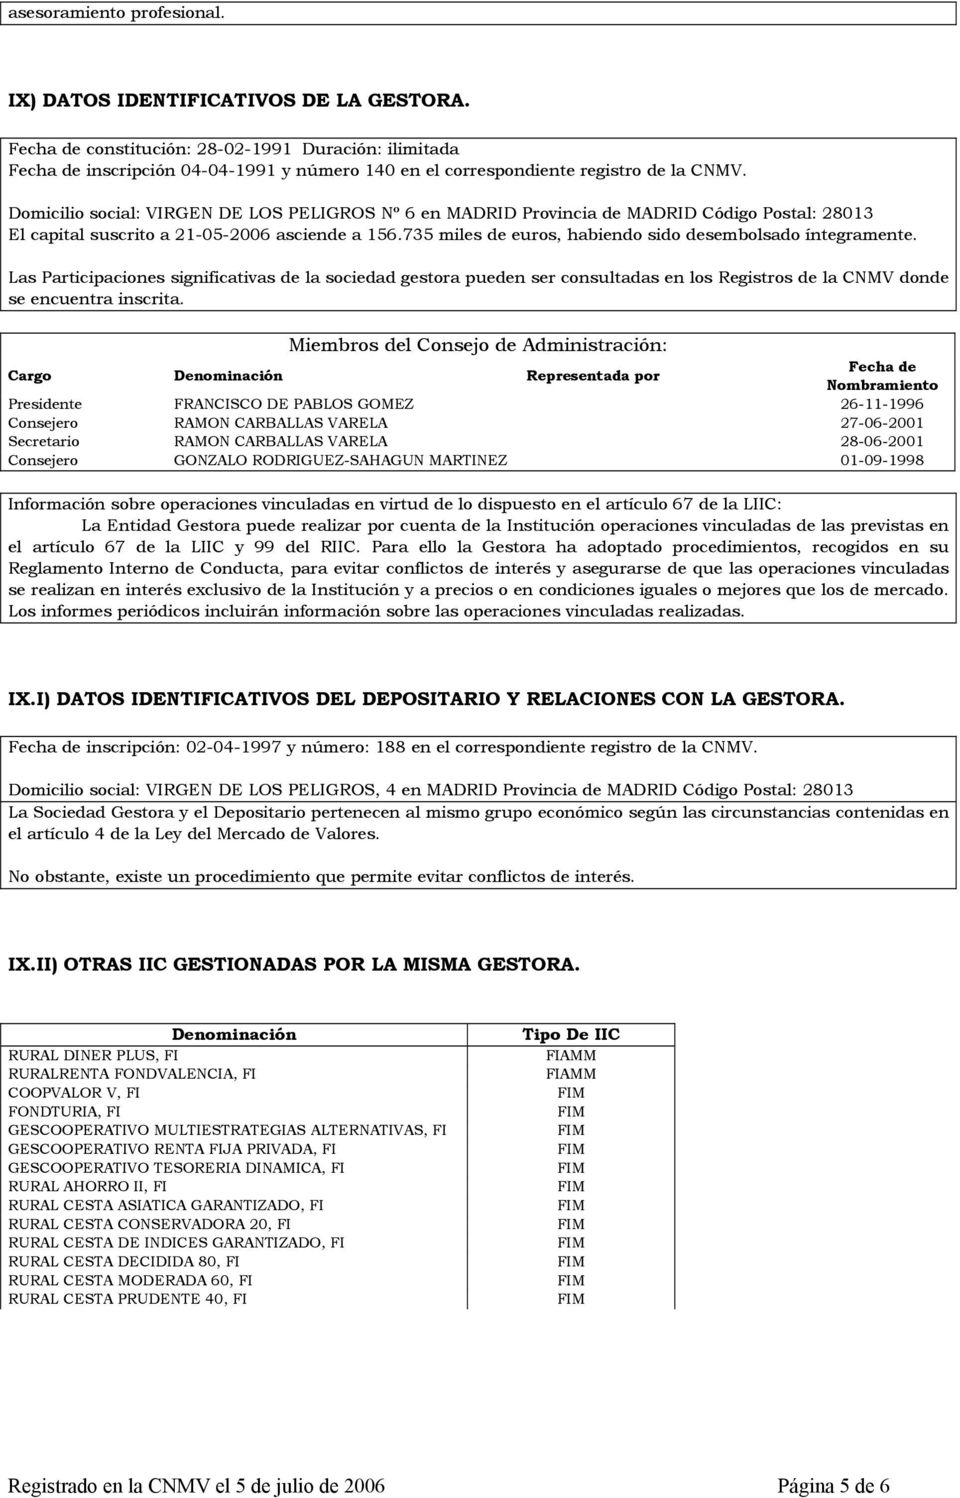 Domicilio social: VIRGEN DE LOS PELIGROS Nº 6 en MADRID Provincia de MADRID Código Postal: 28013 El capital suscrito a 21-05-2006 asciende a 156.